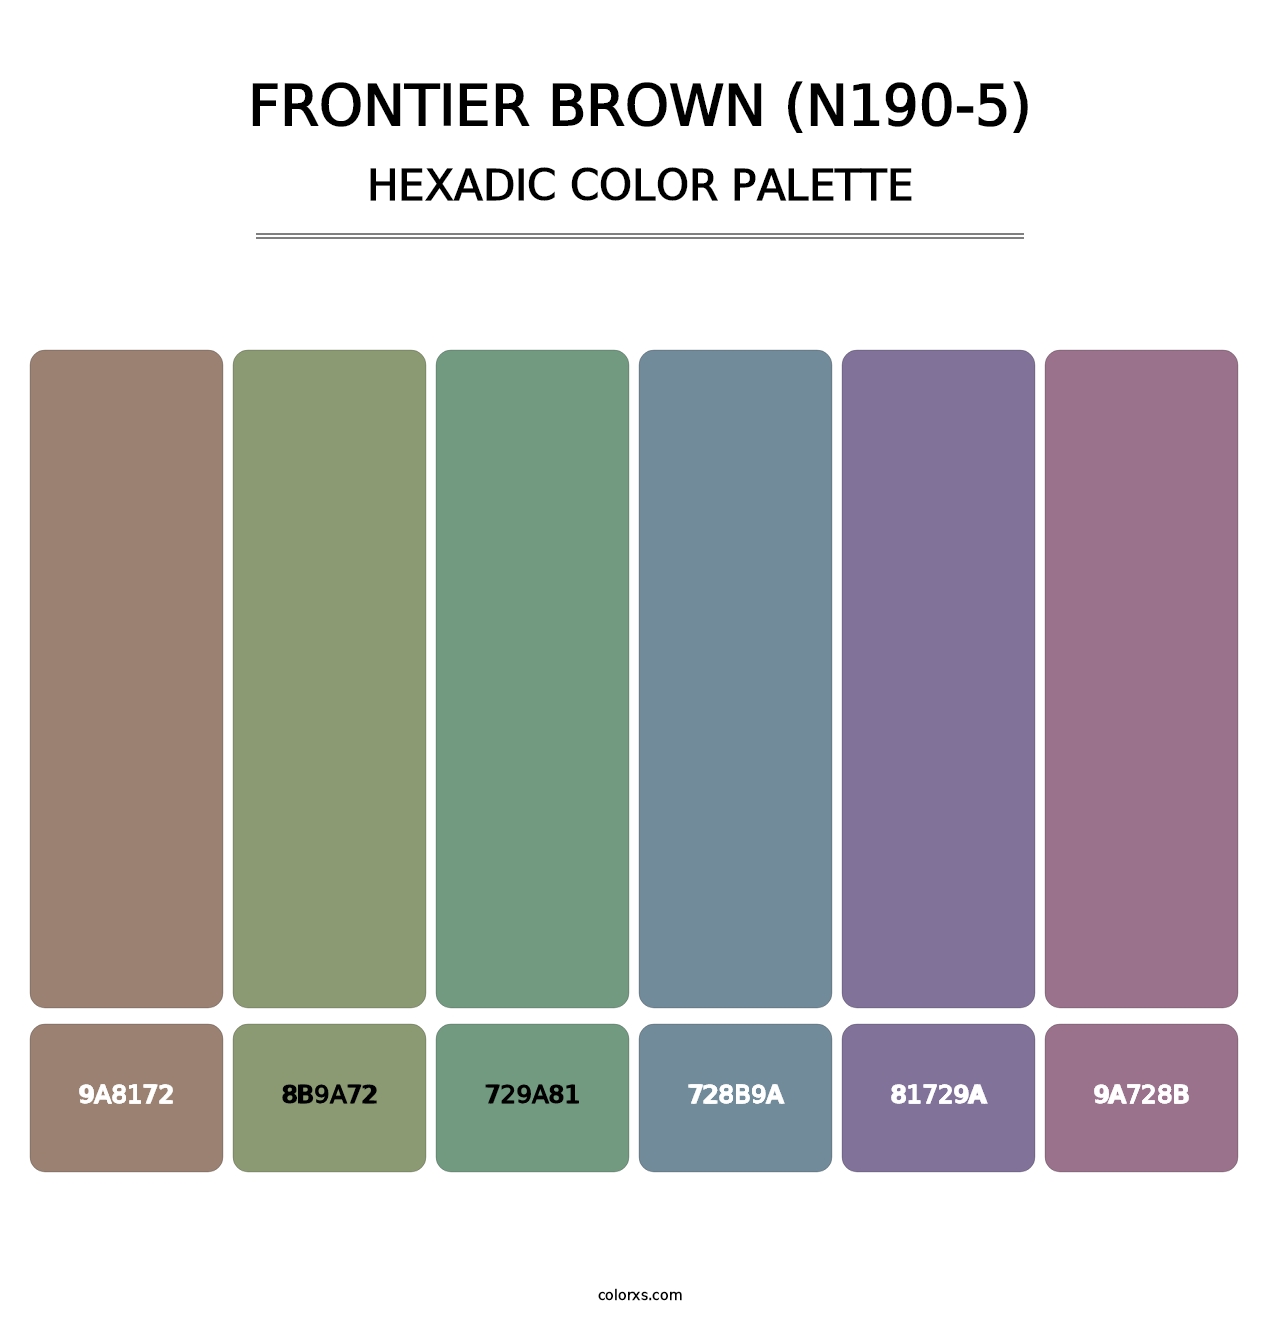 Frontier Brown (N190-5) - Hexadic Color Palette